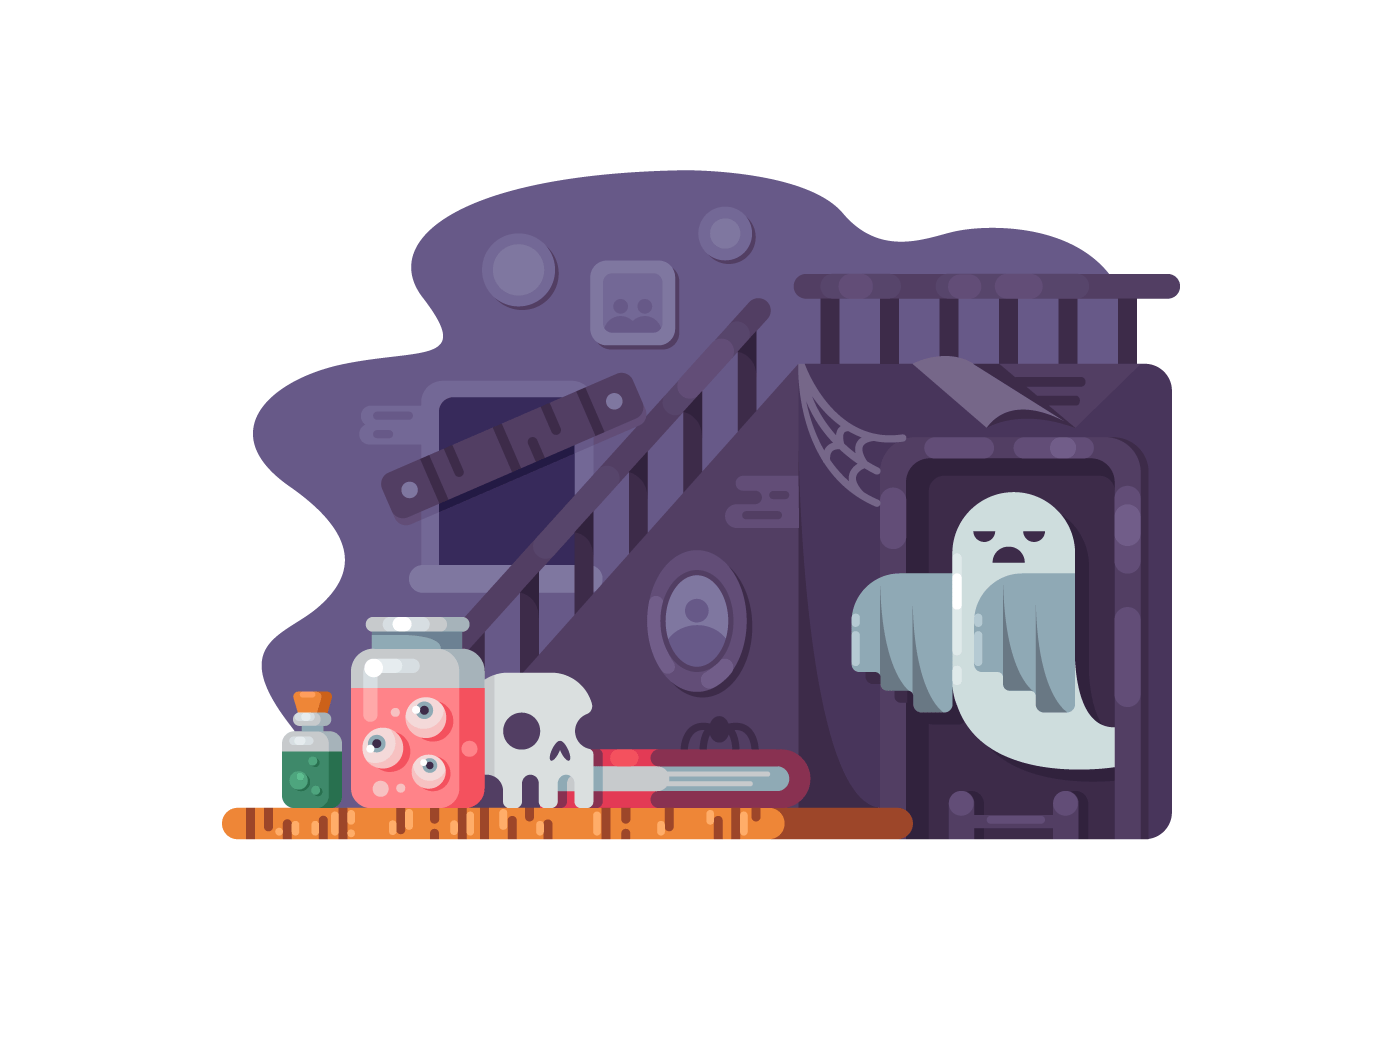 Haunted house illustration